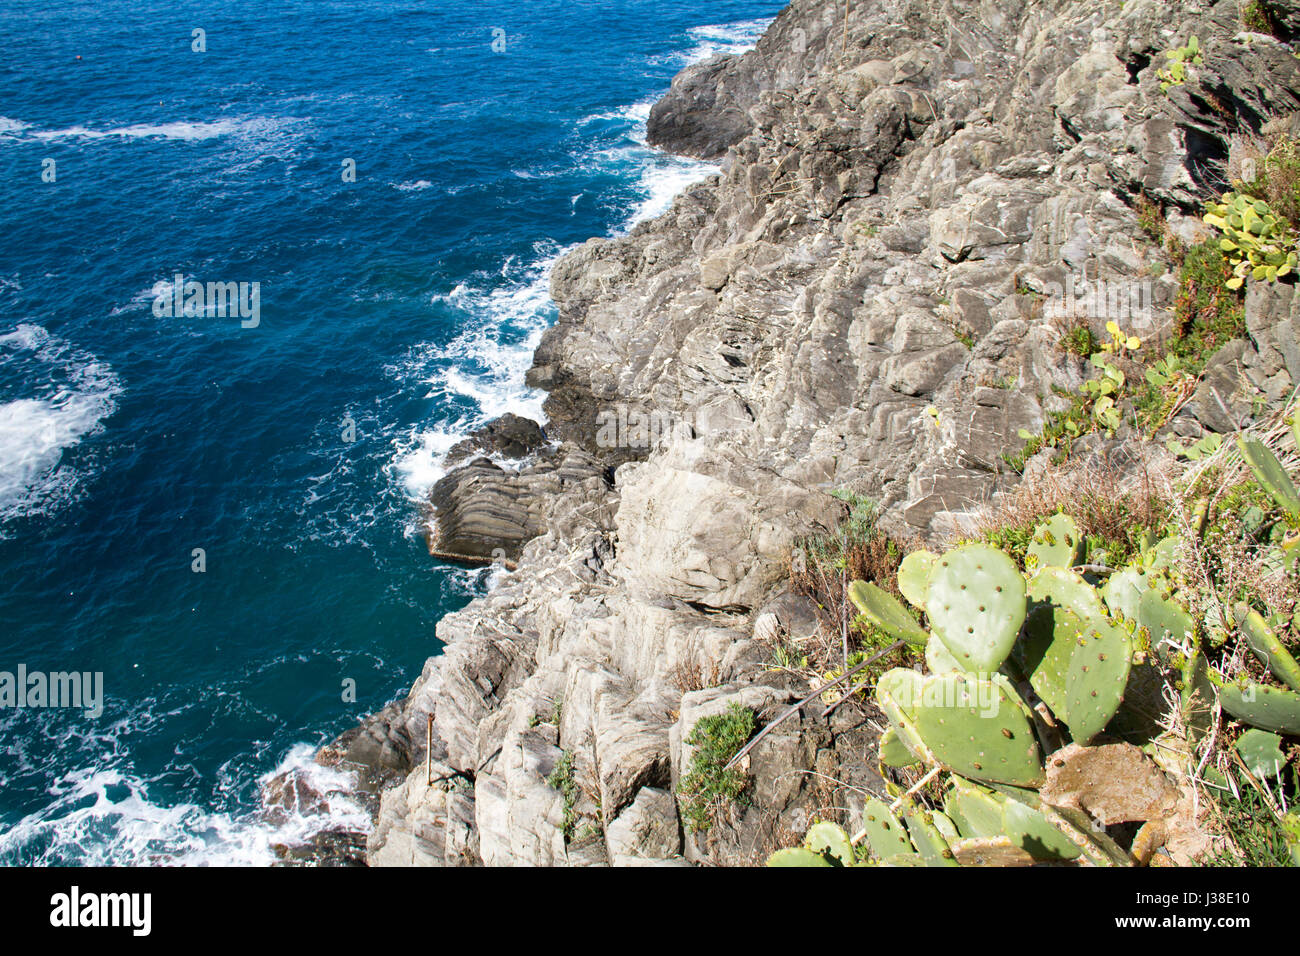 La costa de Liguria en las cinco tierras Foto de stock